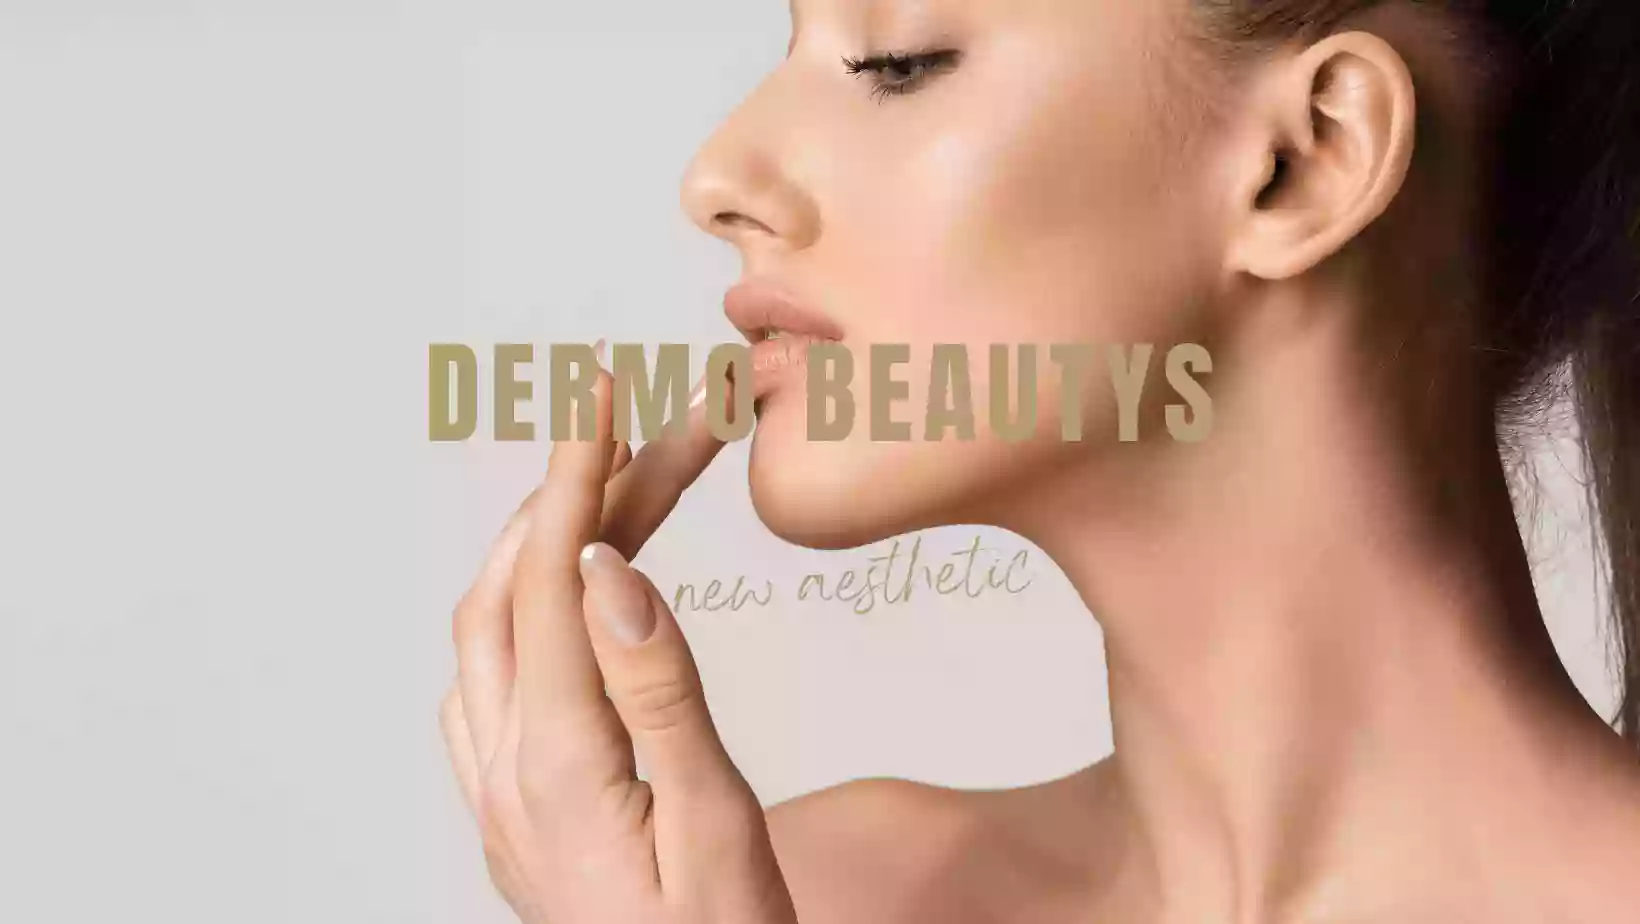 Dermo Beautys